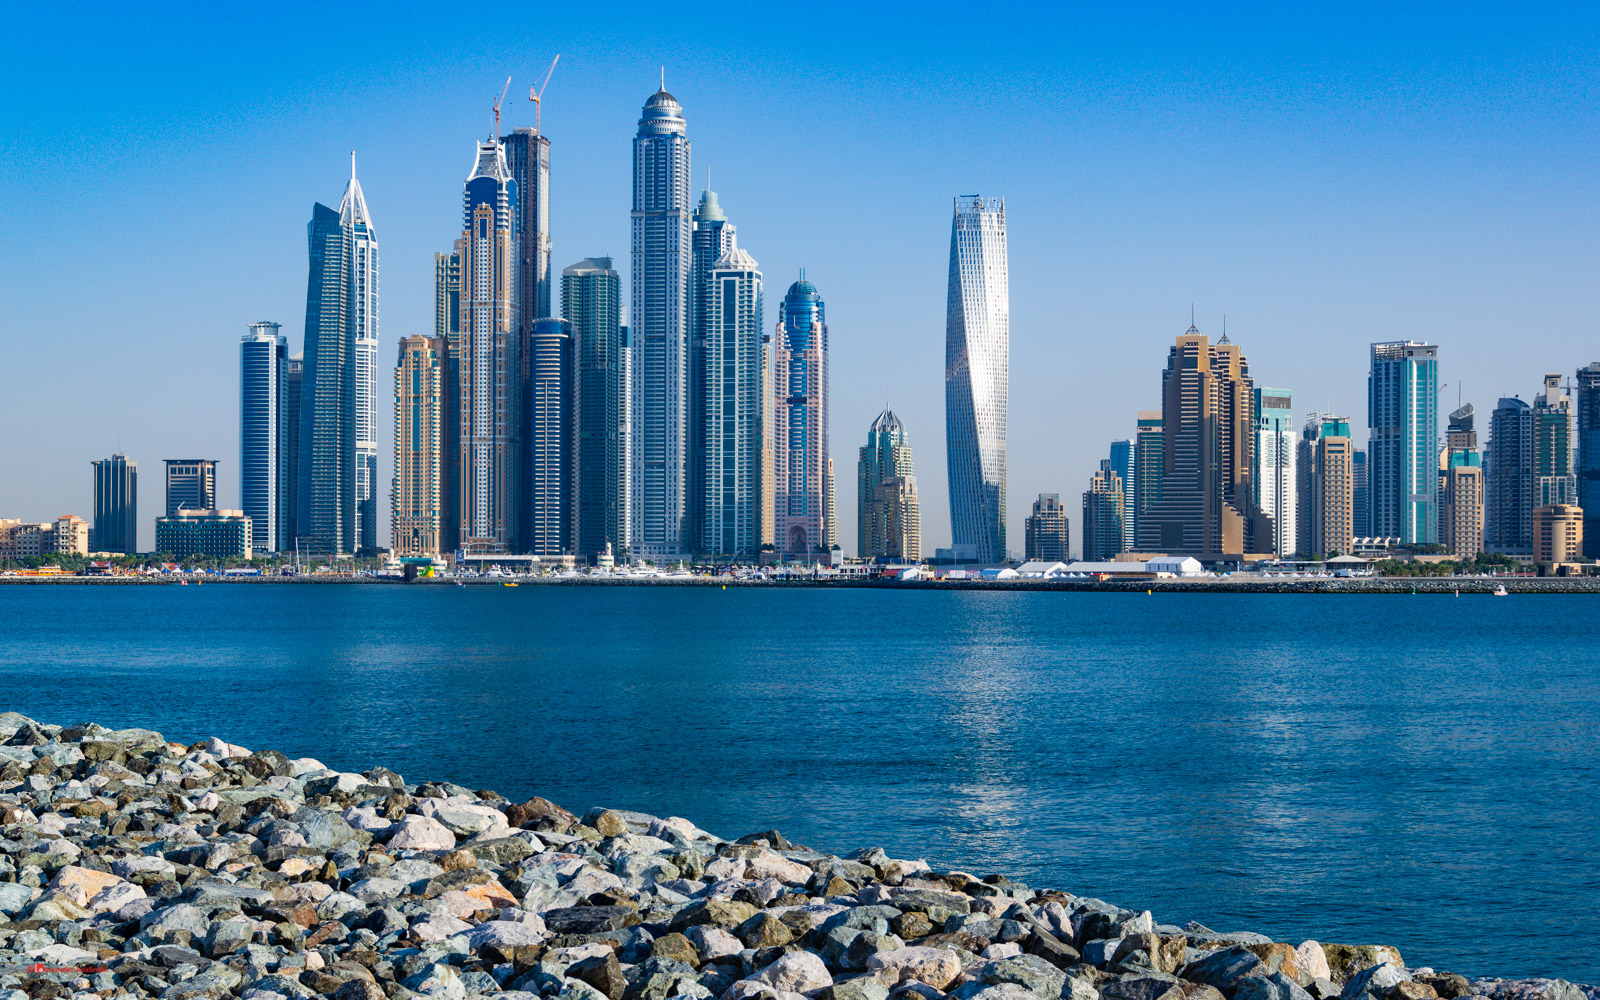 View of Dubai Marina from Palm Jumeirah